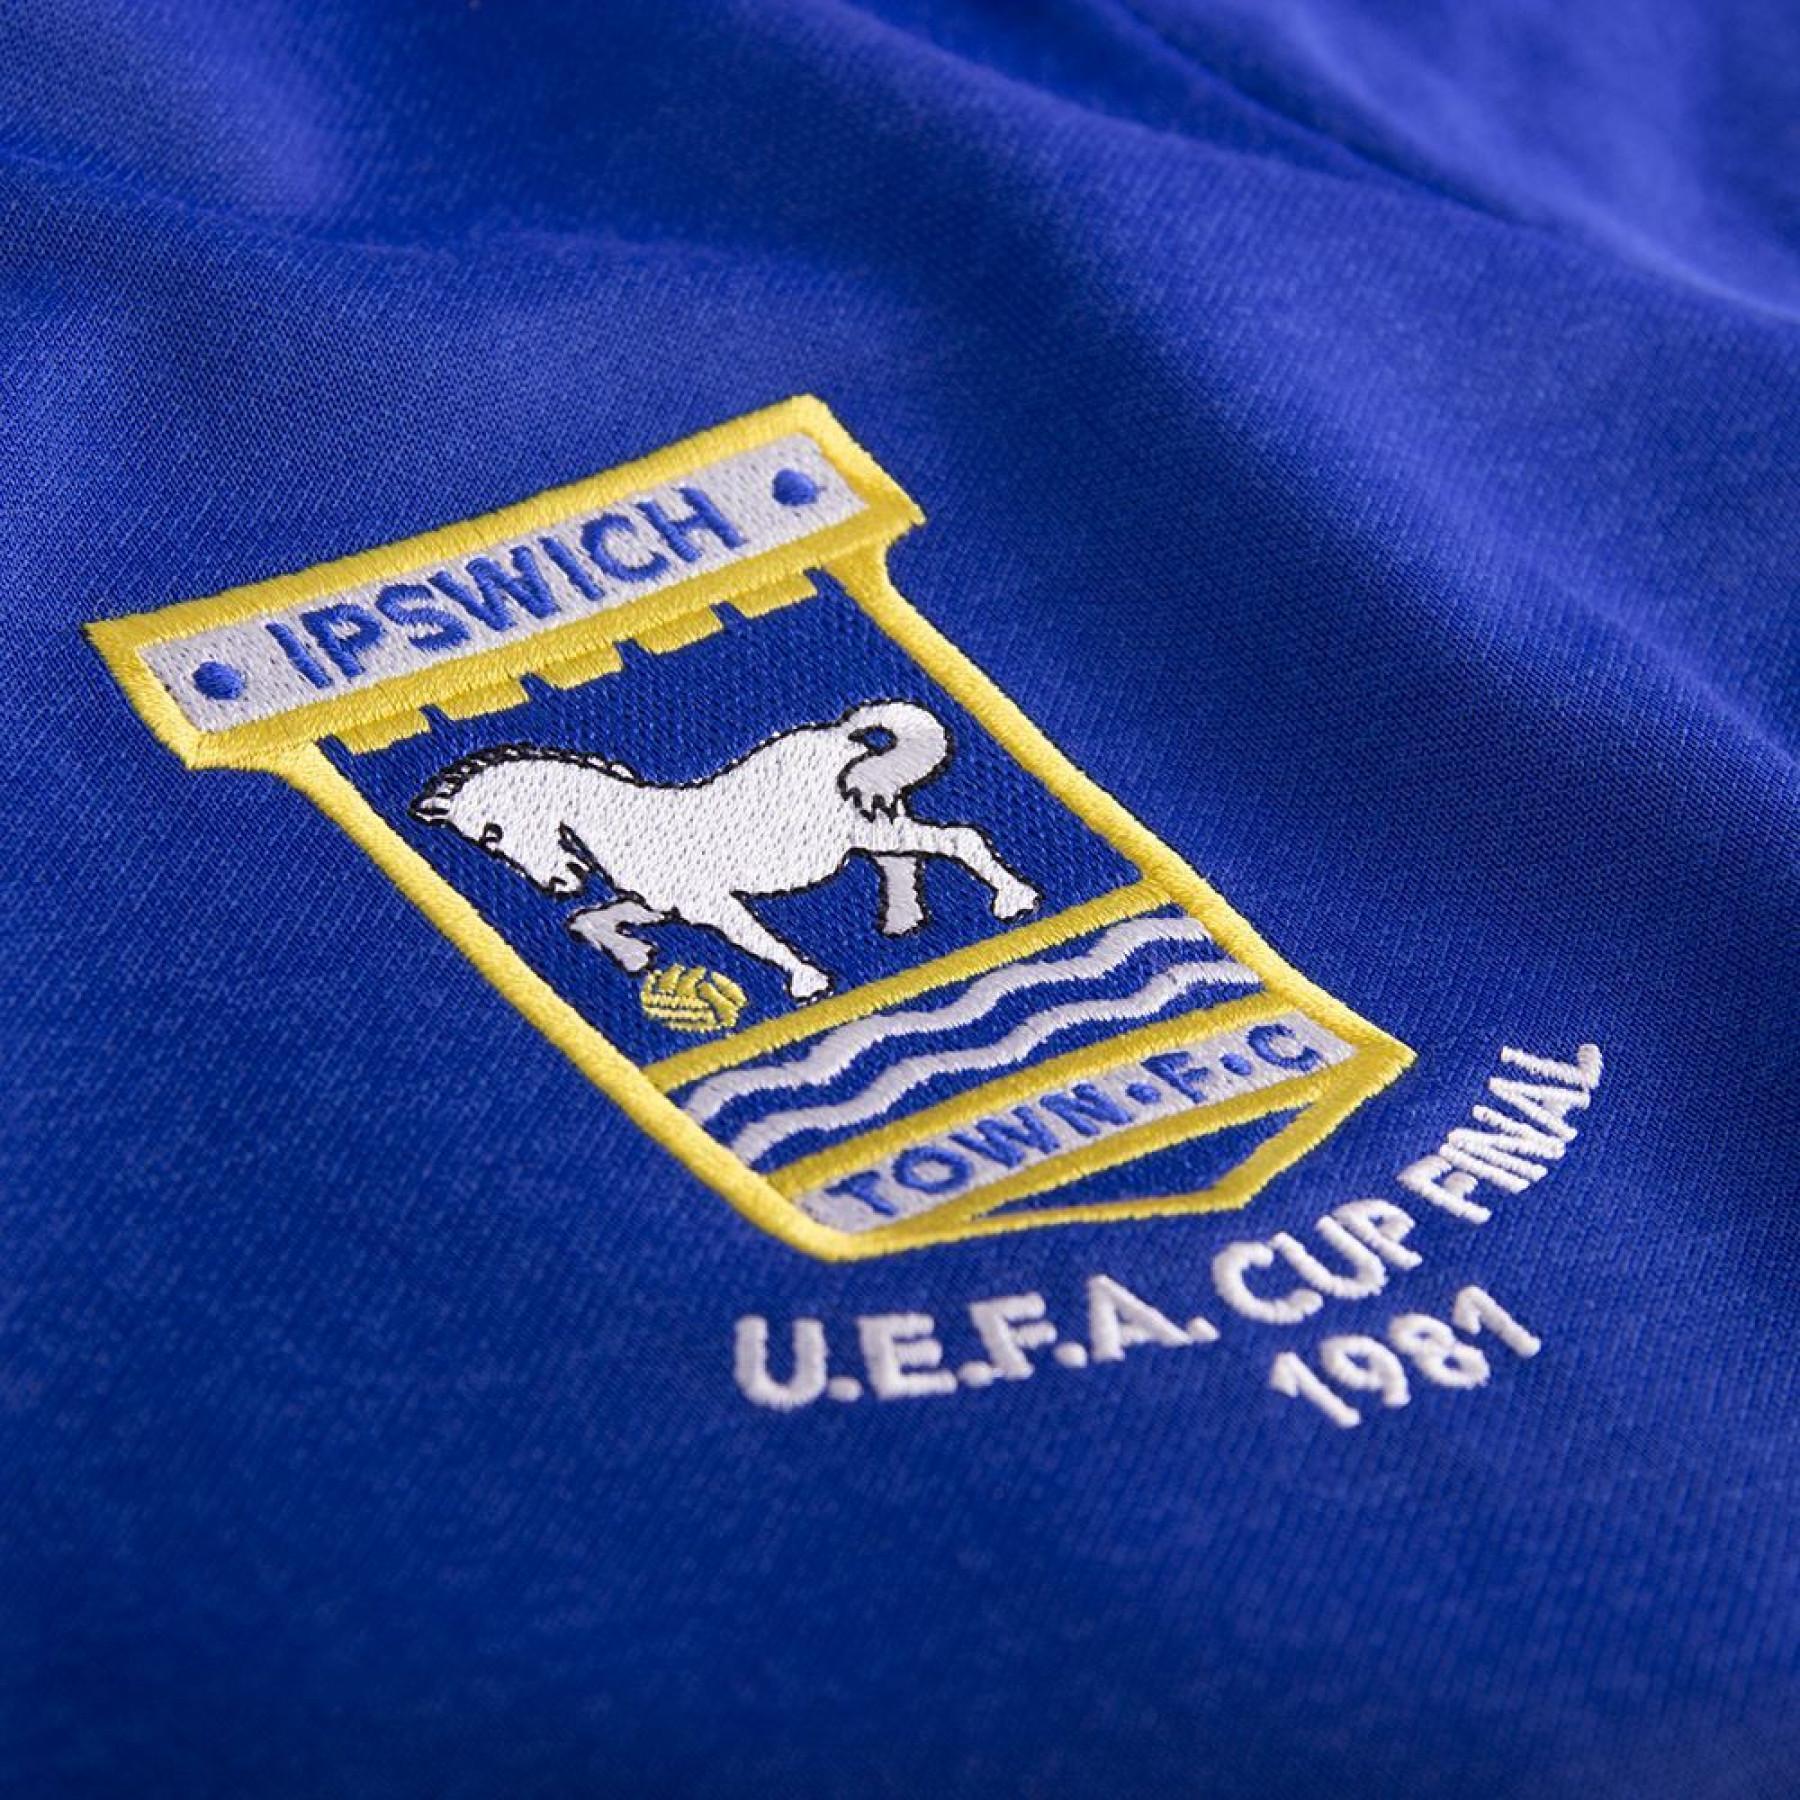 Camiseta retro de la Copa Ipswich Town 1980/81